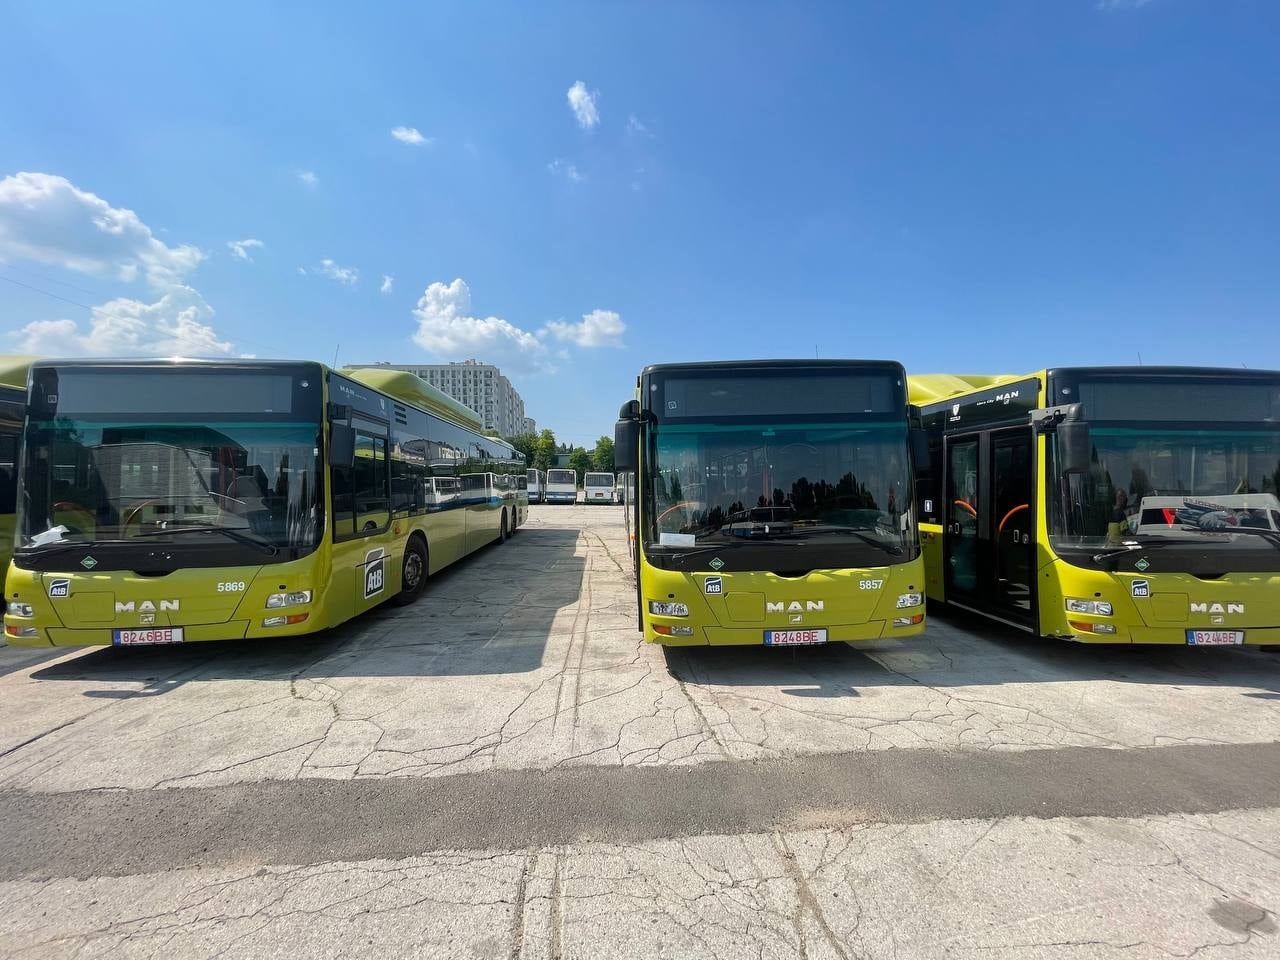 В Кишинев доставили семь автобусов, купленных в Норвегии (ФОТО)